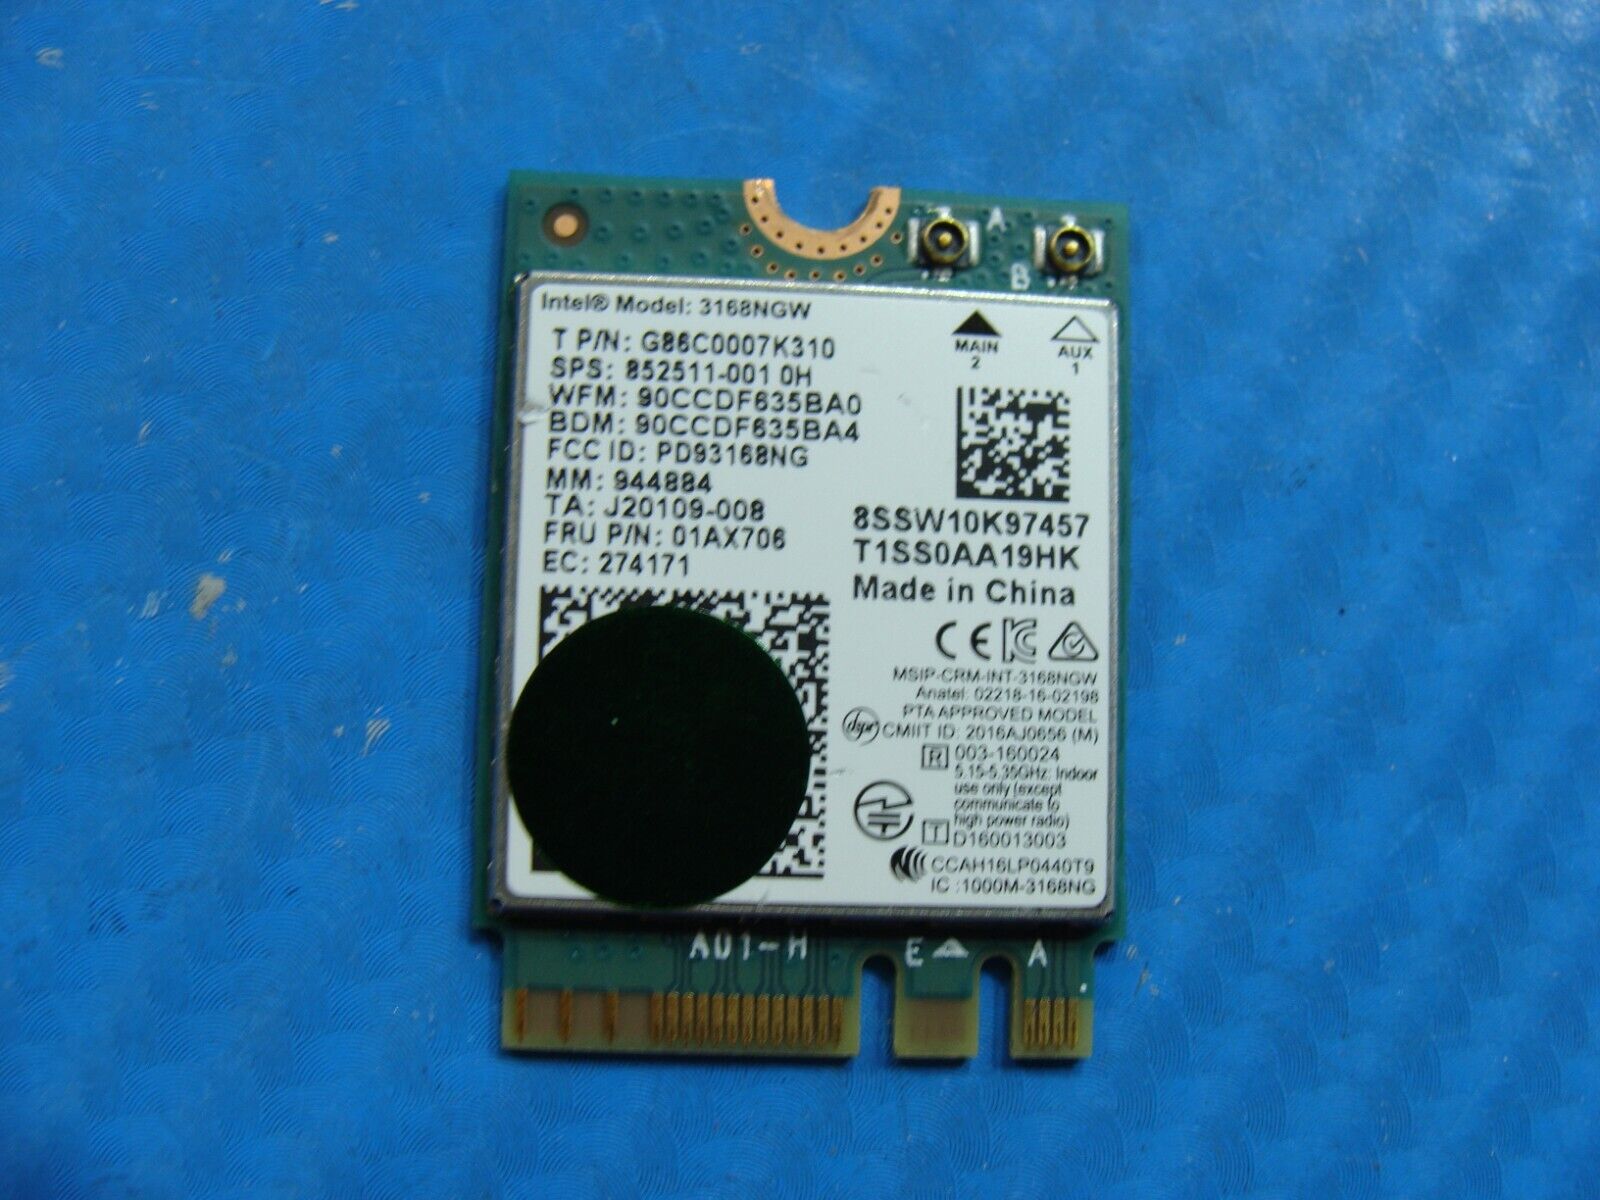 CyberPowerPC C-Series OEM Desktop Wireless WiFi Card 3168NGW 852511-001 01AX706